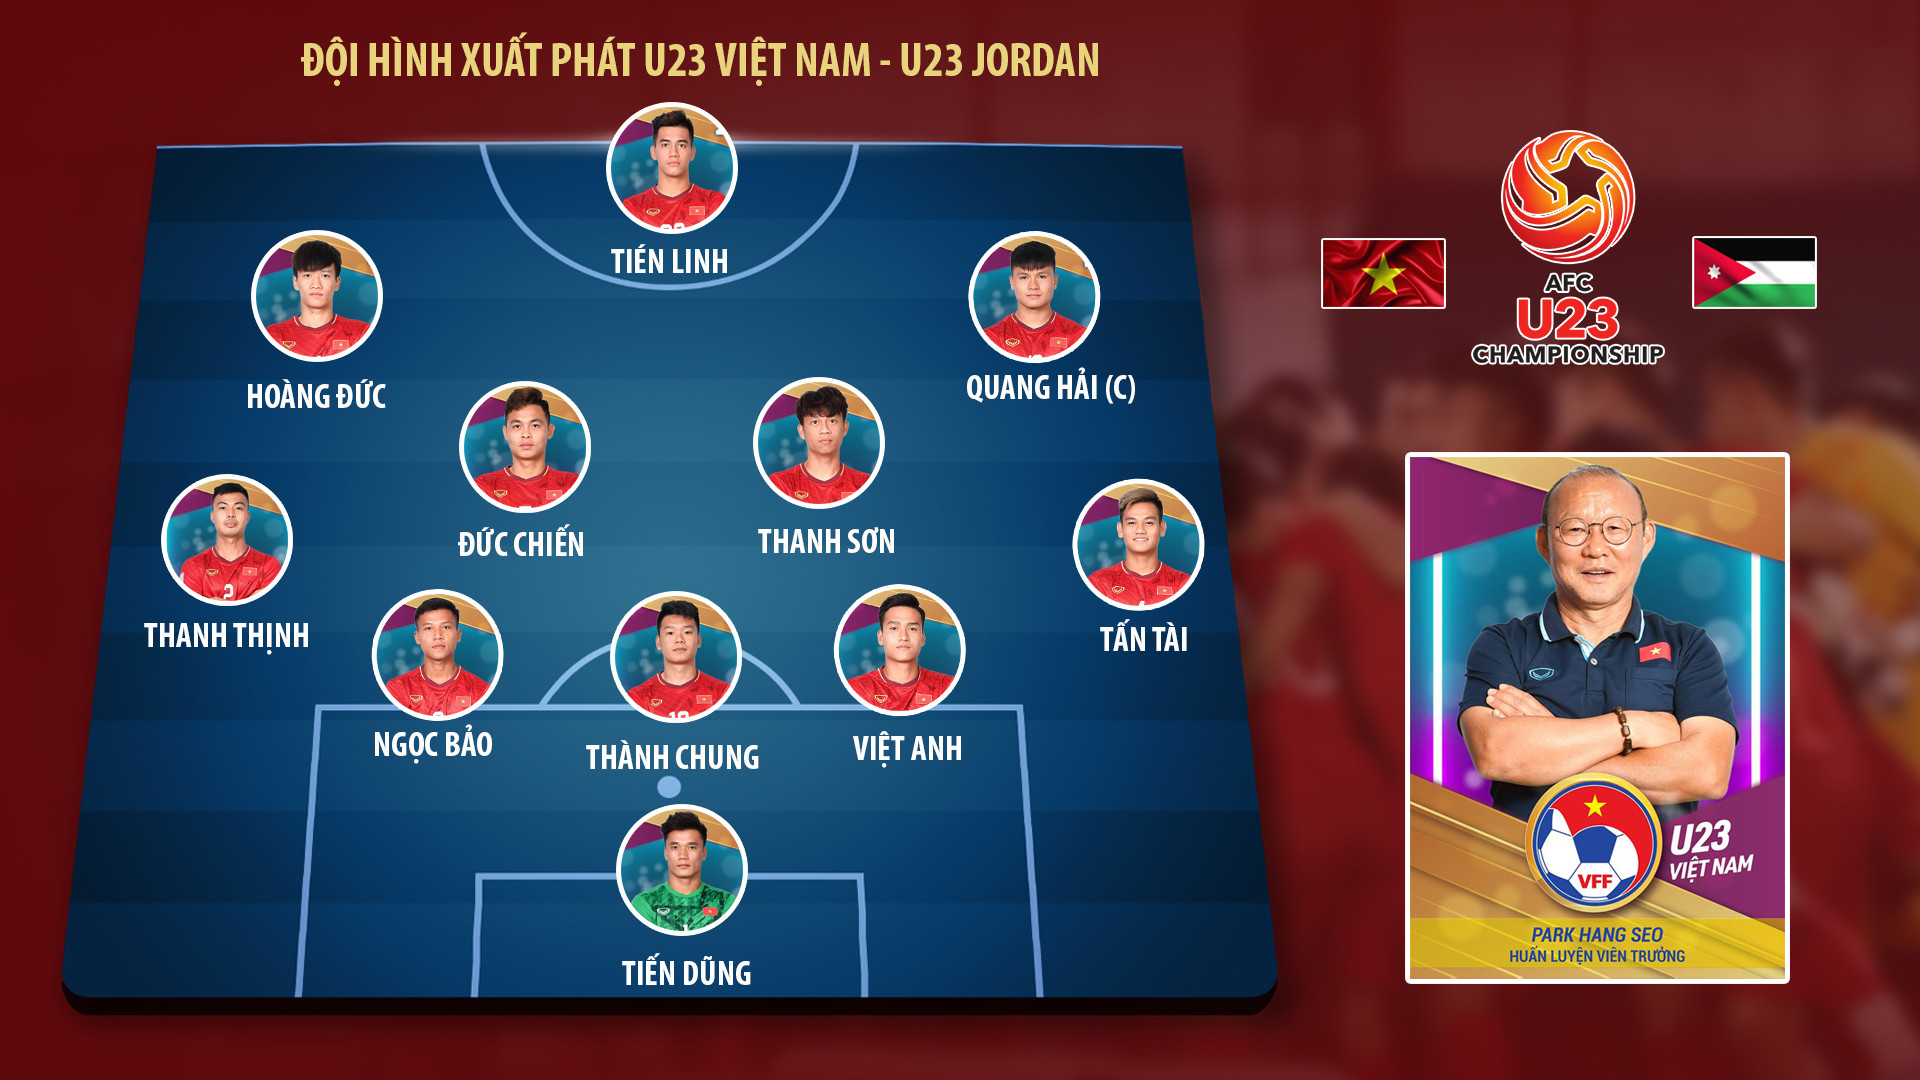 Đội hình xuất phát U23 Việt Nam - U23 Jordan. Đồ họa: TK